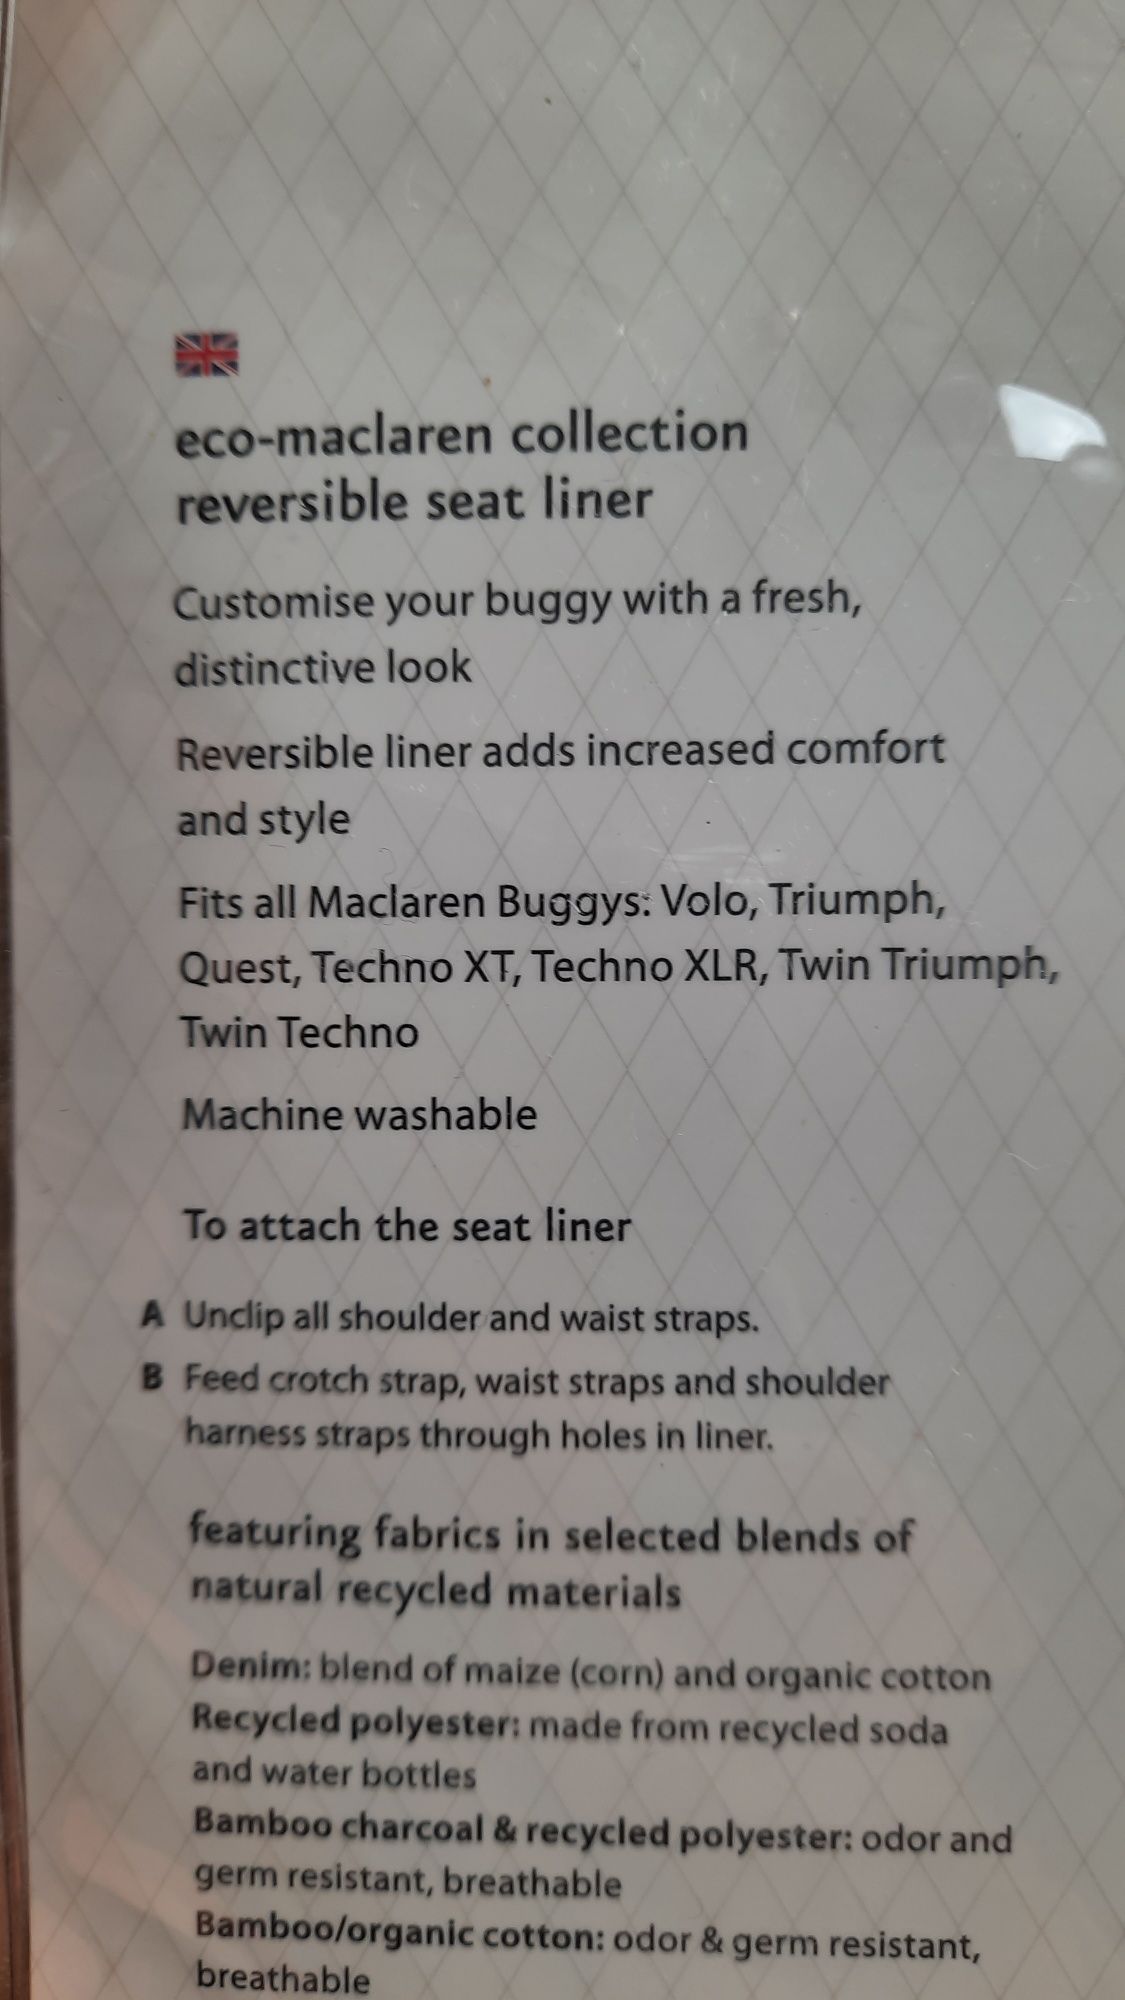 Maclaren dwustronna wkładka do wózka techno XT/XLR i inne